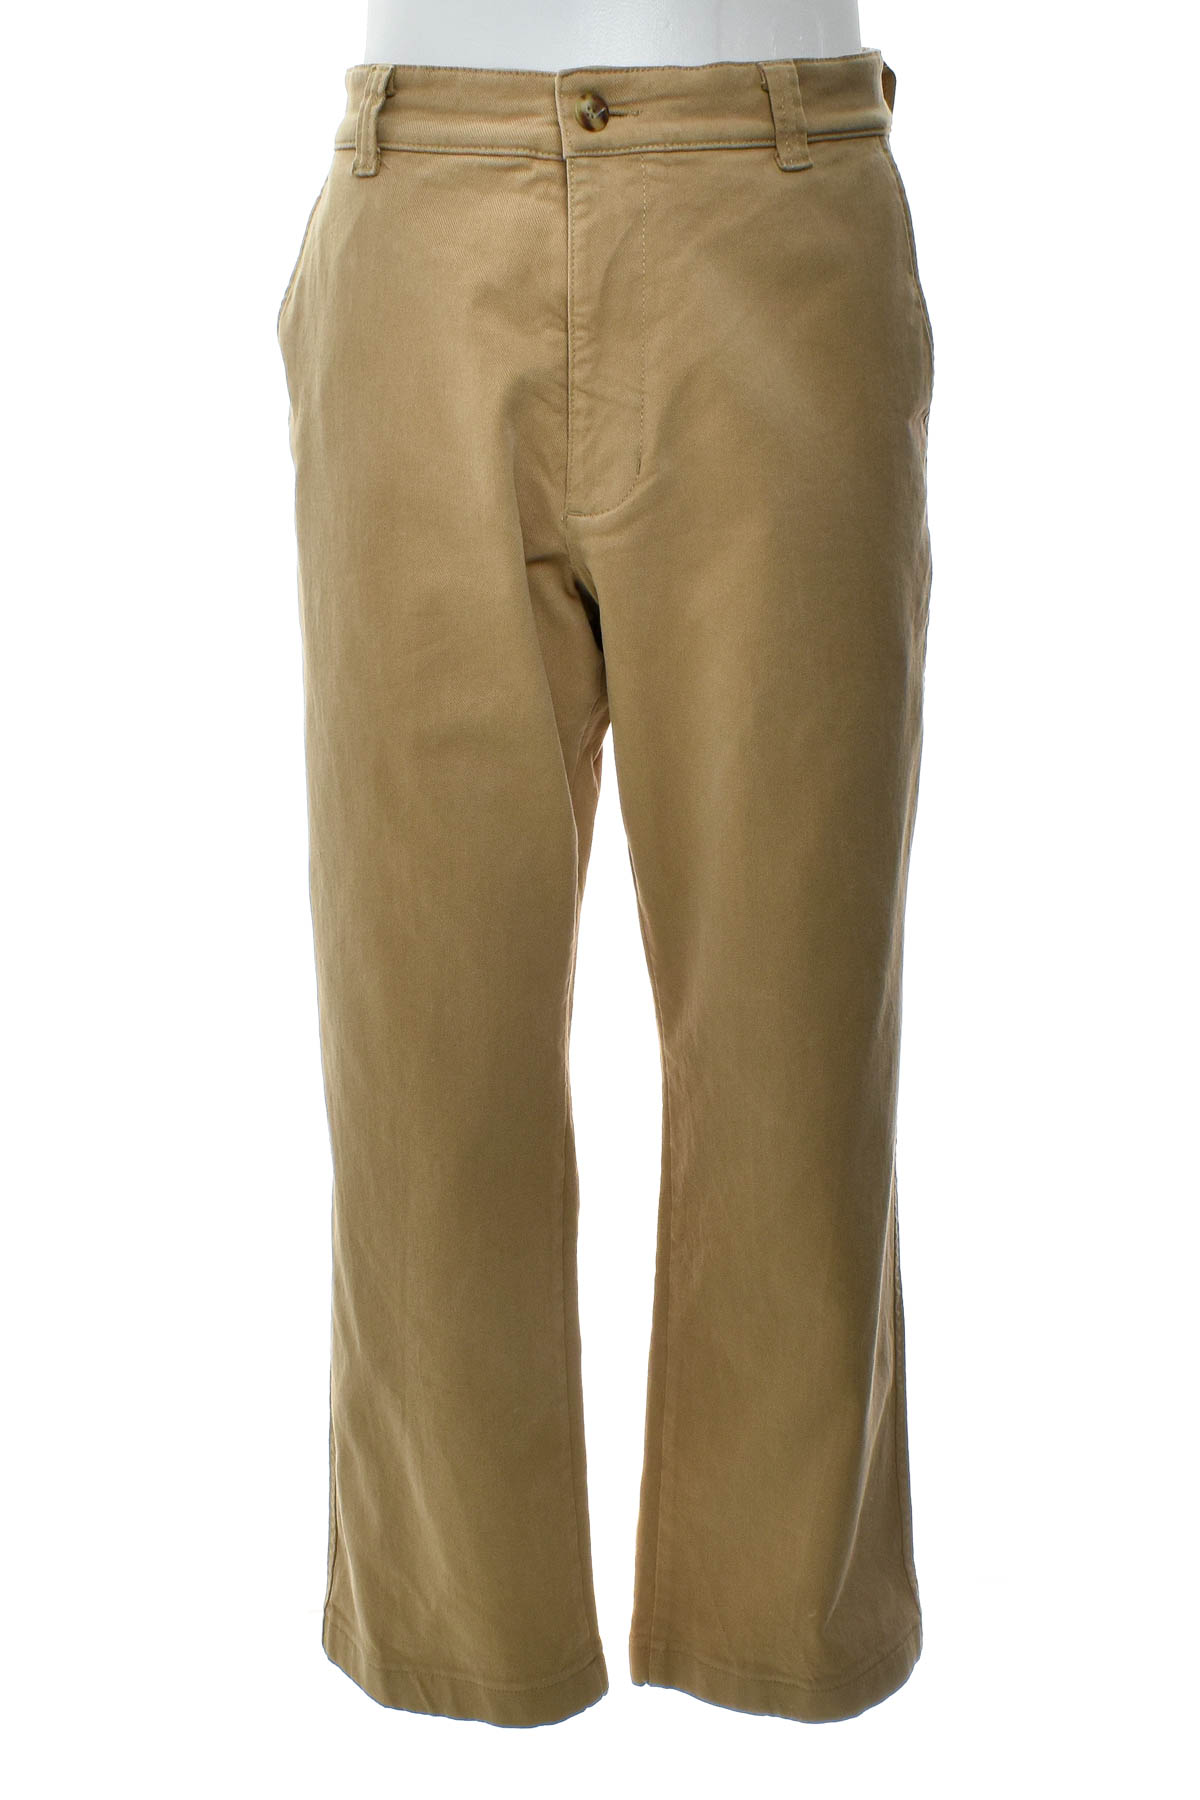 Pantalon pentru bărbați - MAC - 0